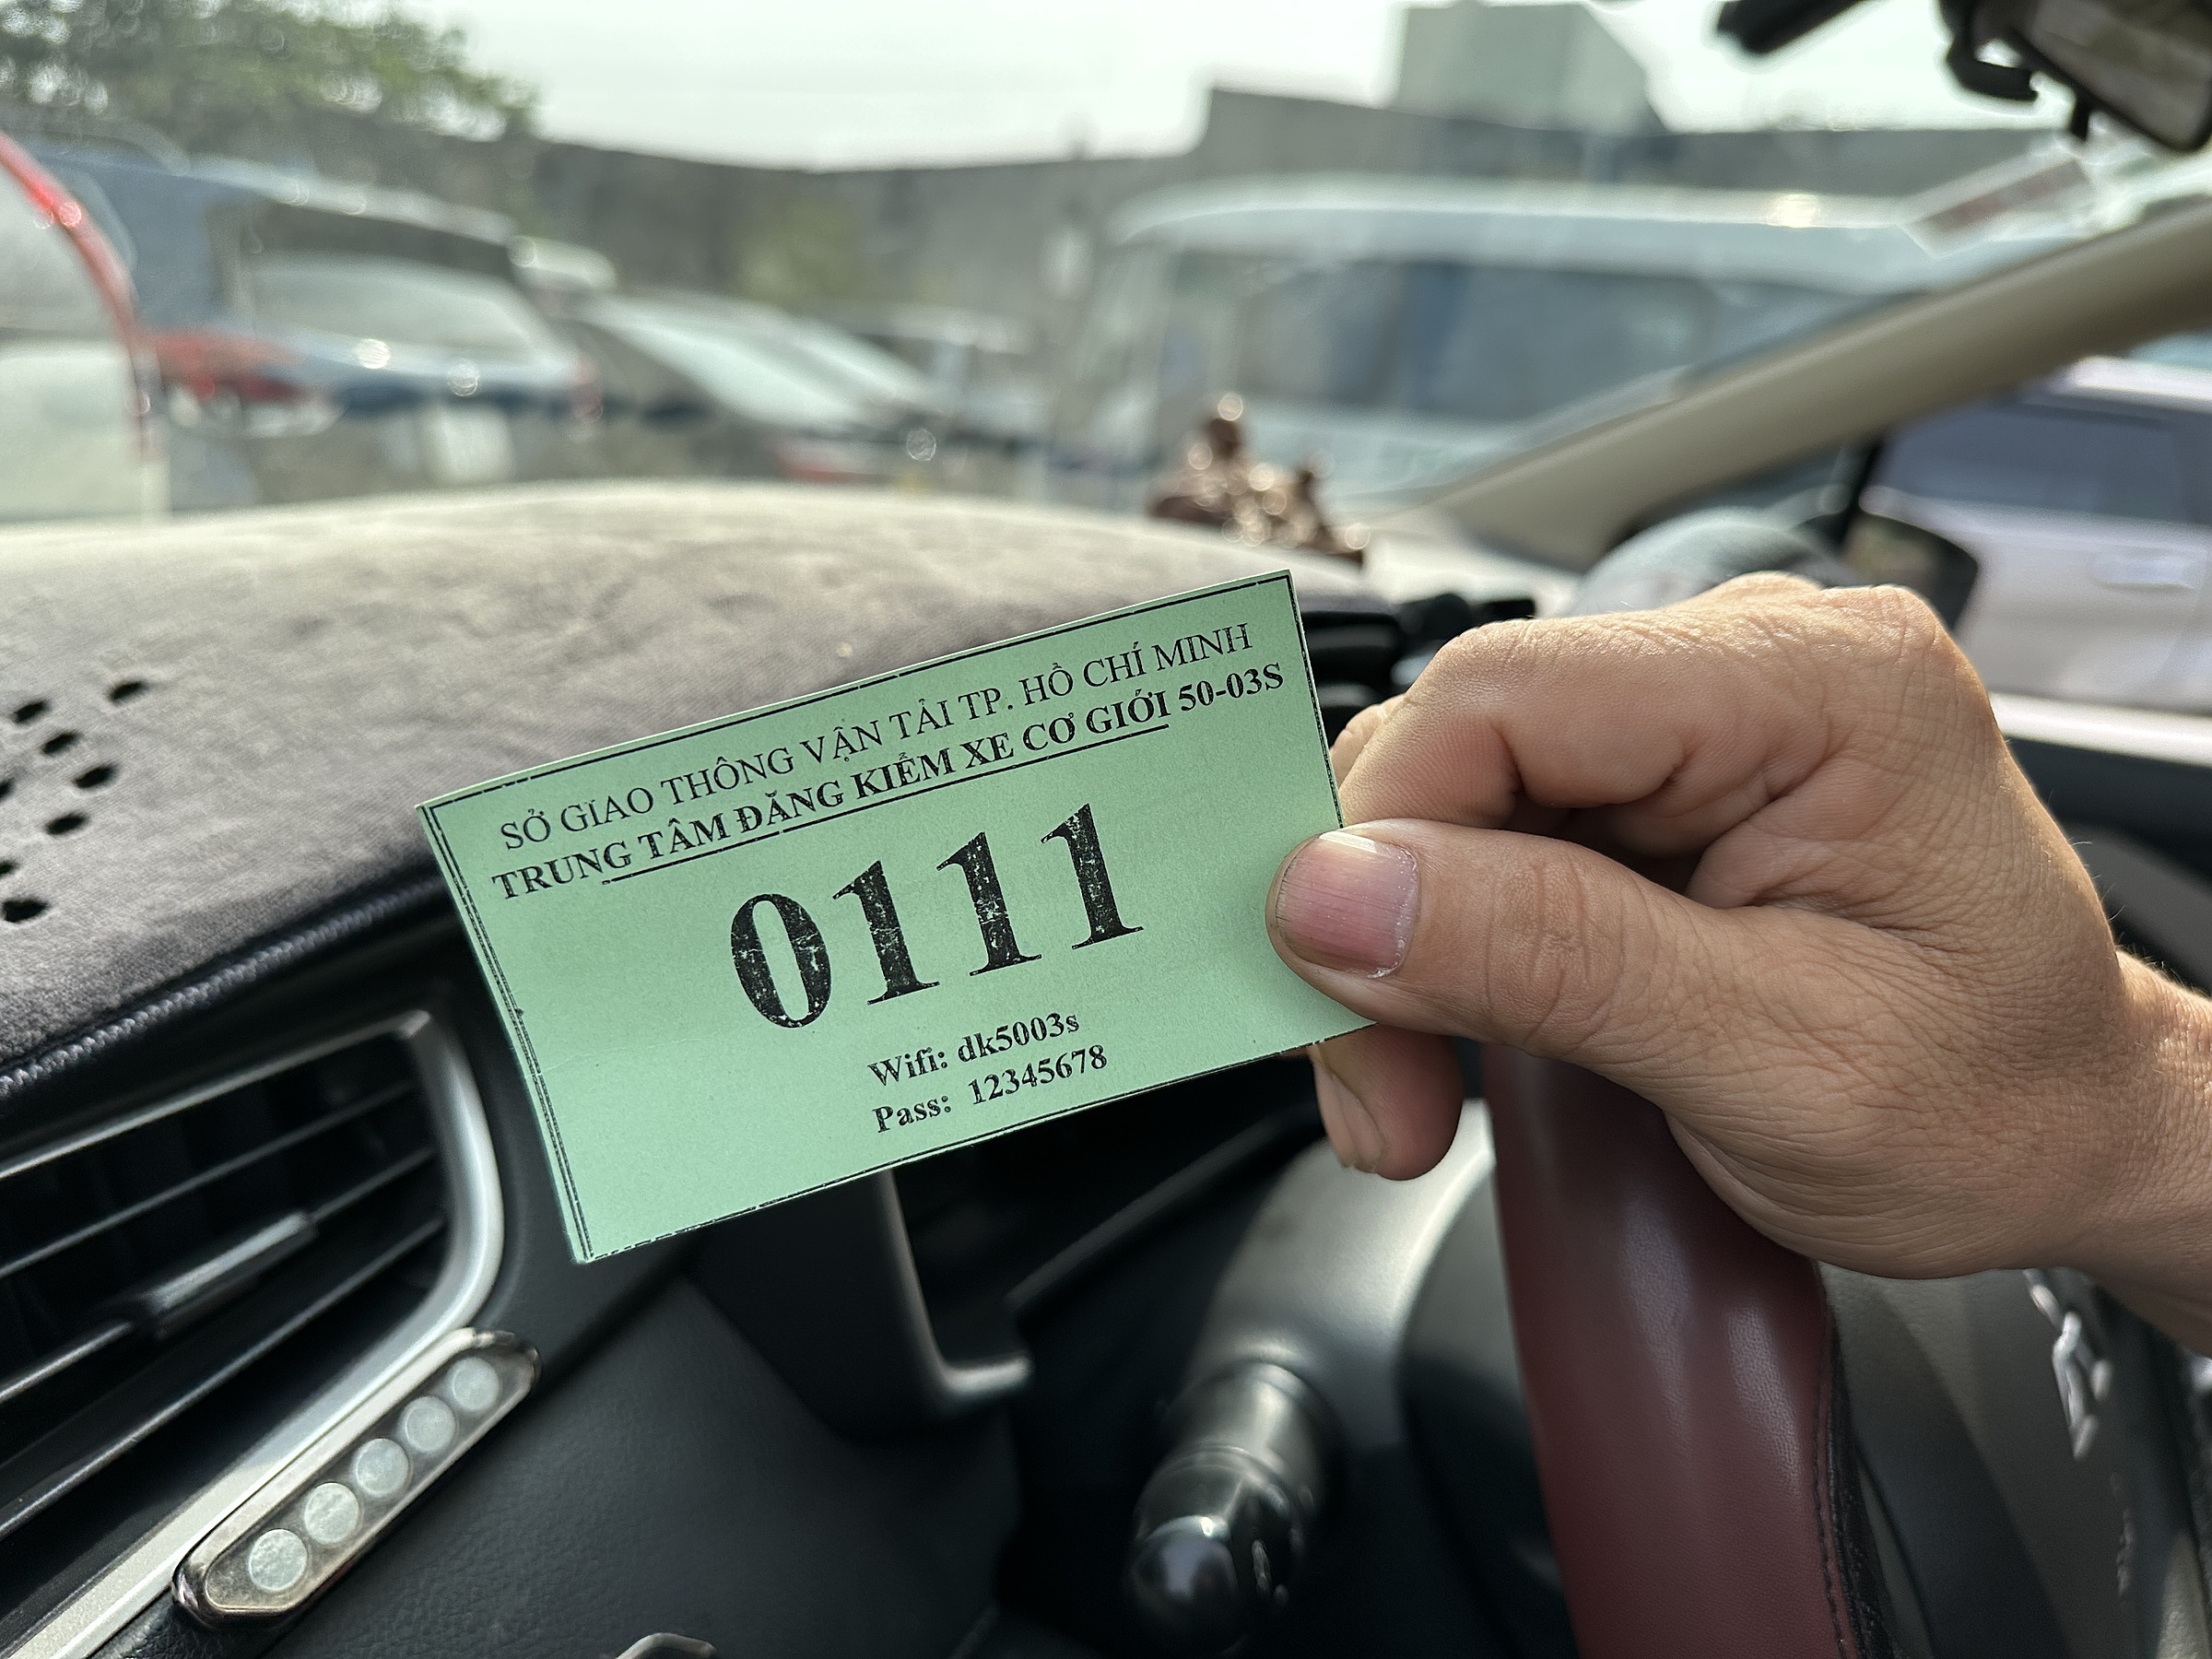 Một tài xế cầm số thứ tự 111 chờ vào đăng kiểm xe sau khi sắp hàng từ 4 giờ, ngày 27/12.